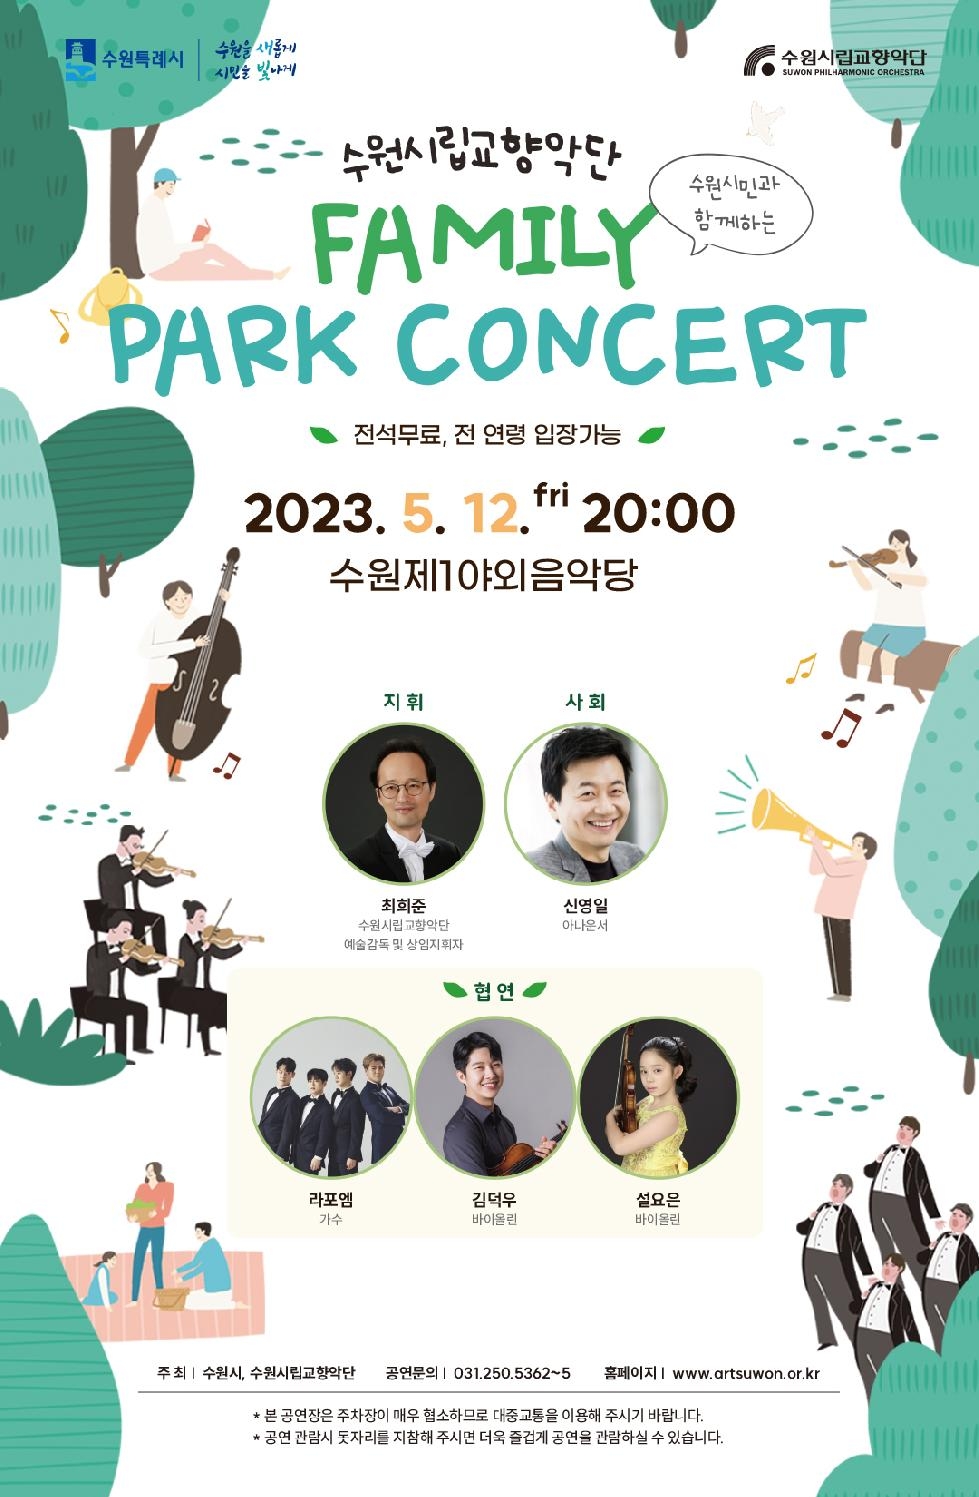 수원시·수원시립교향악단, 5월 12일 ‘패밀리 파크 콘서트’열어